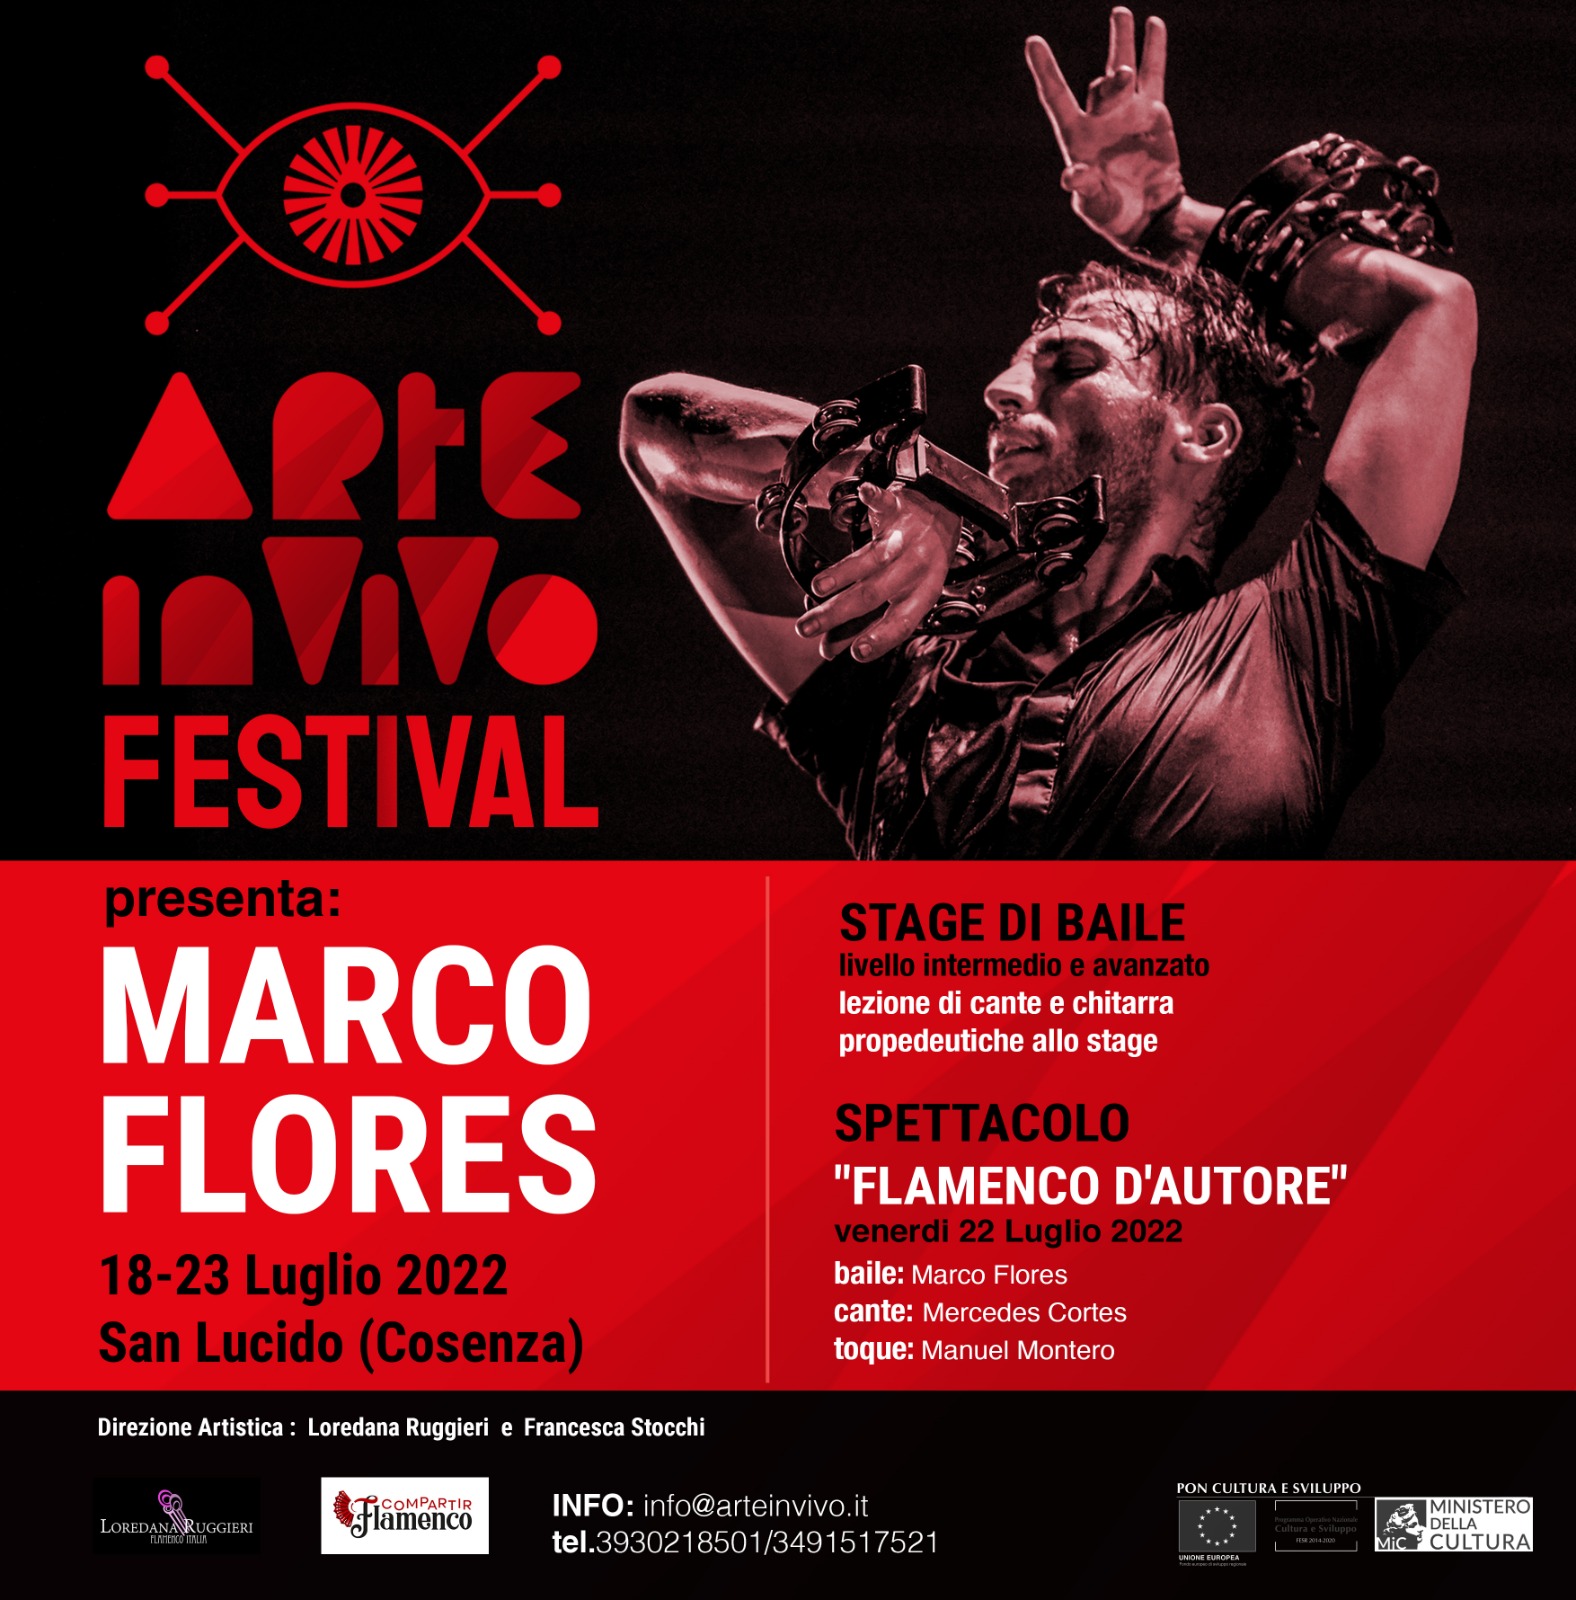 Marco Flores 22 luglio 2022 in Italia a San Lucido infiamma il festival Arteinvivo